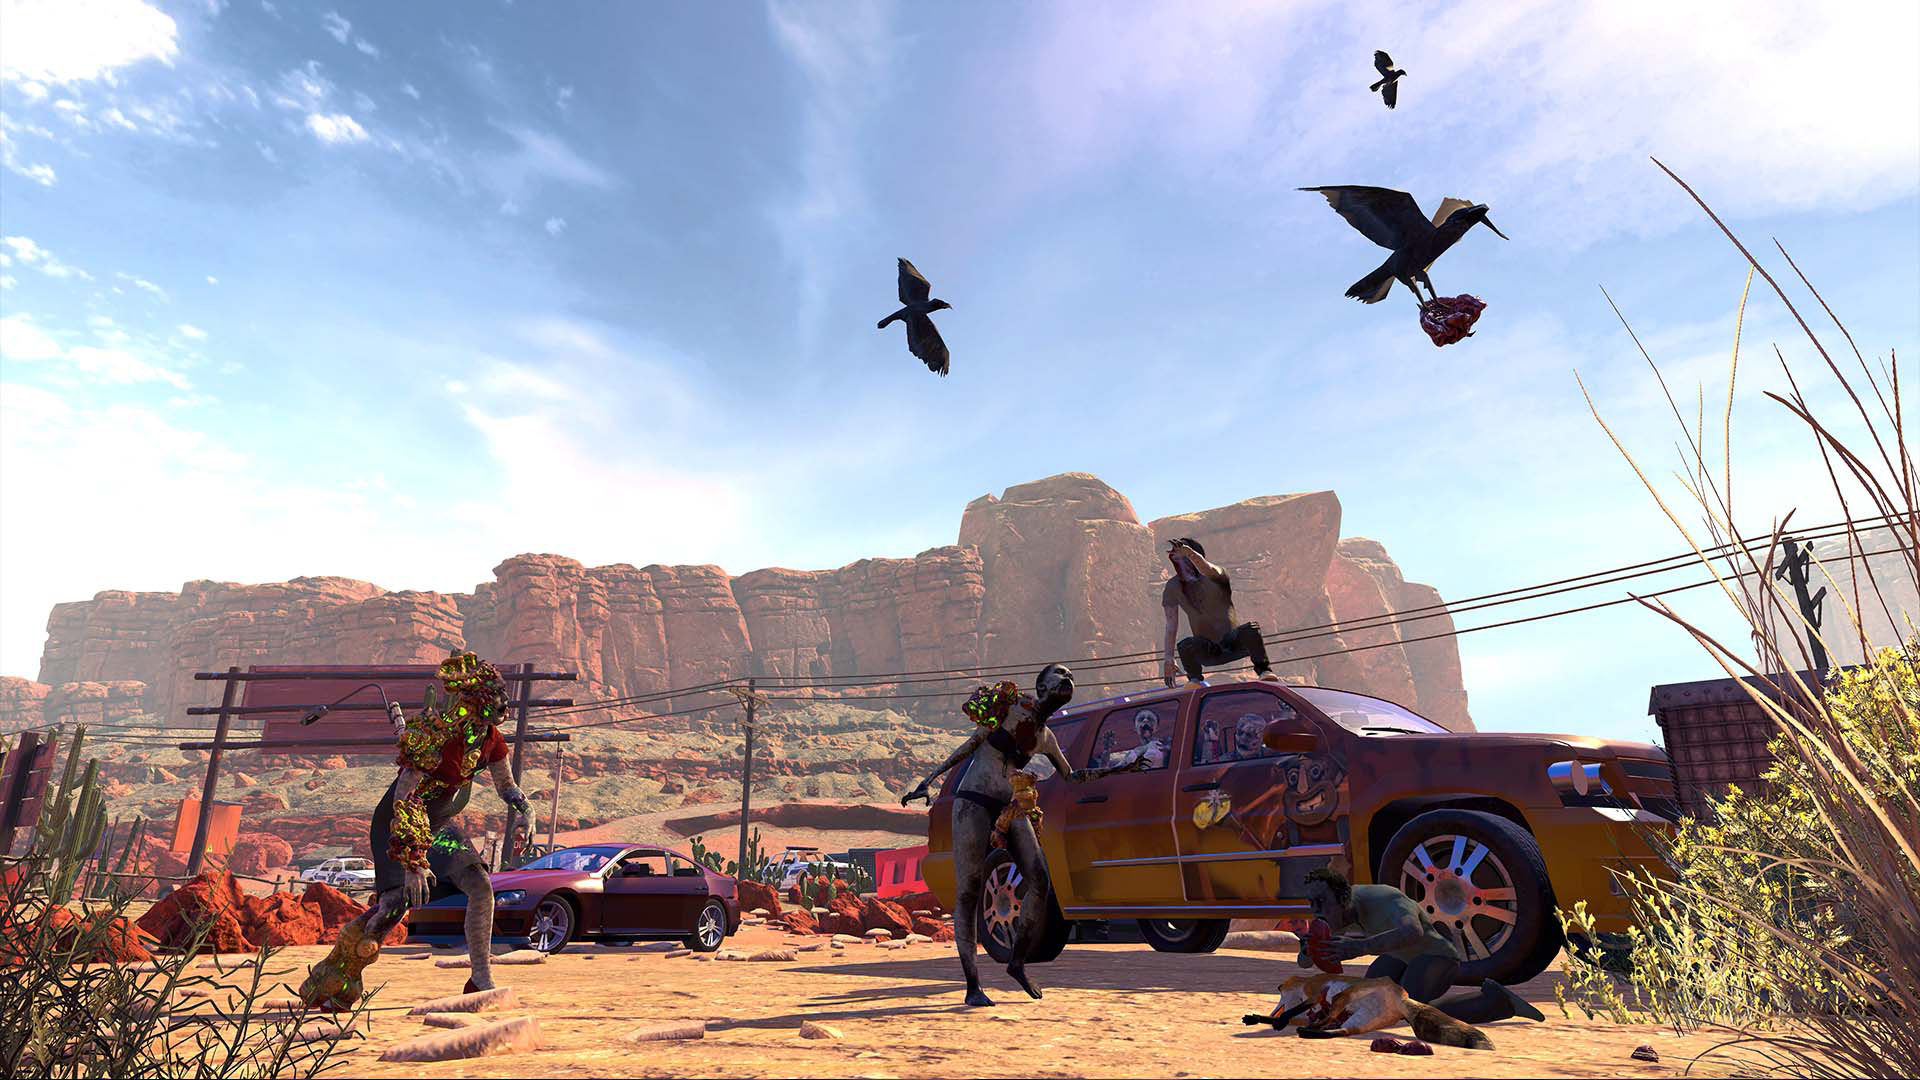 Et screenshot fra Arizona Sunshine fra et ørkenmiljø med en masse biler, zombier og fugle